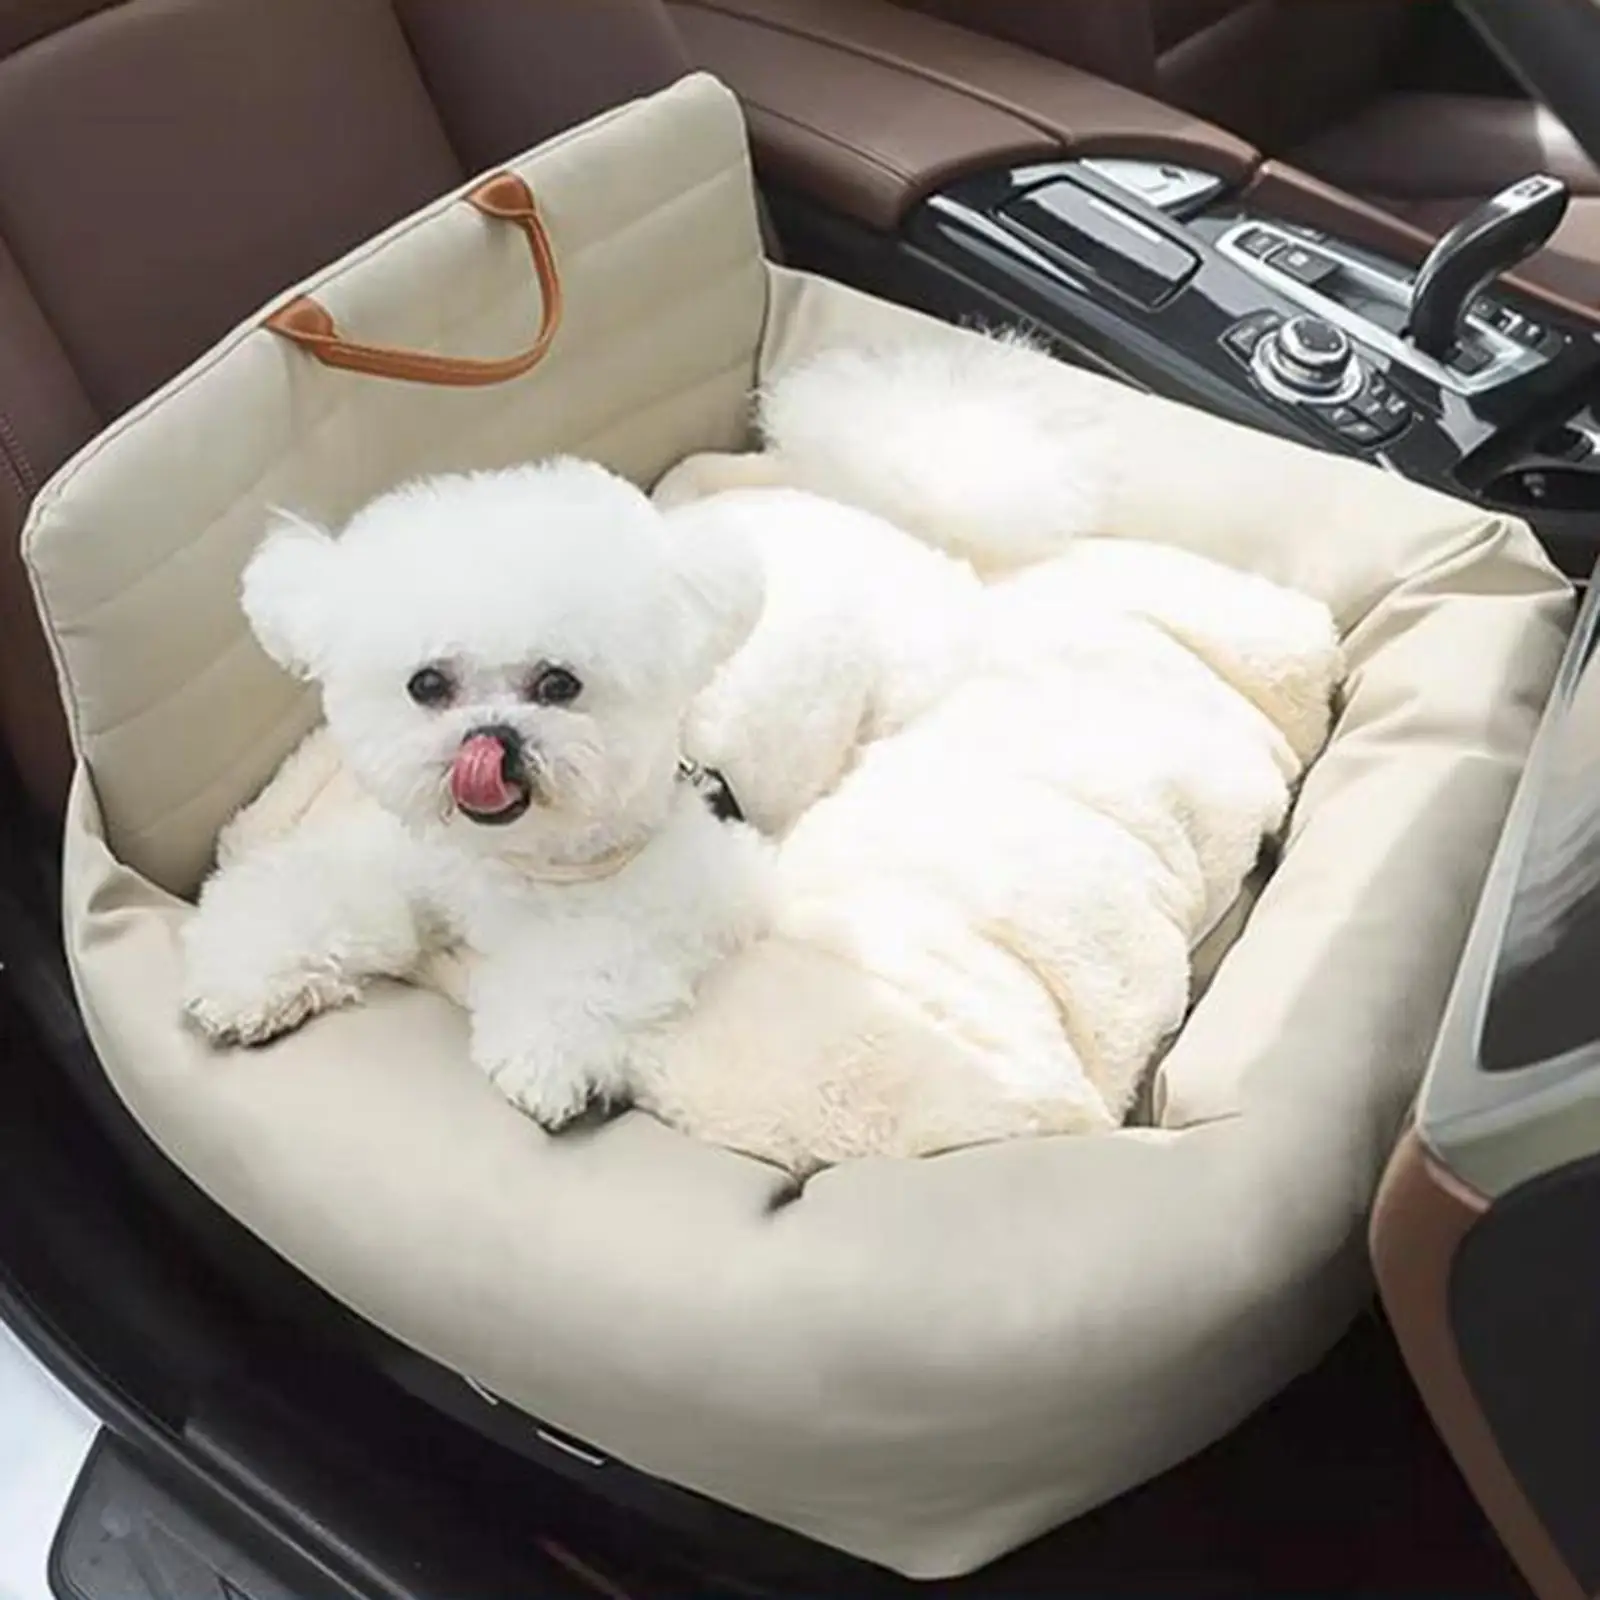 הכלב מושב מחמד שטח המושב הכלב מושב מכונית בינונית כלבים גור חתולים גדולים . ' - ' . 1